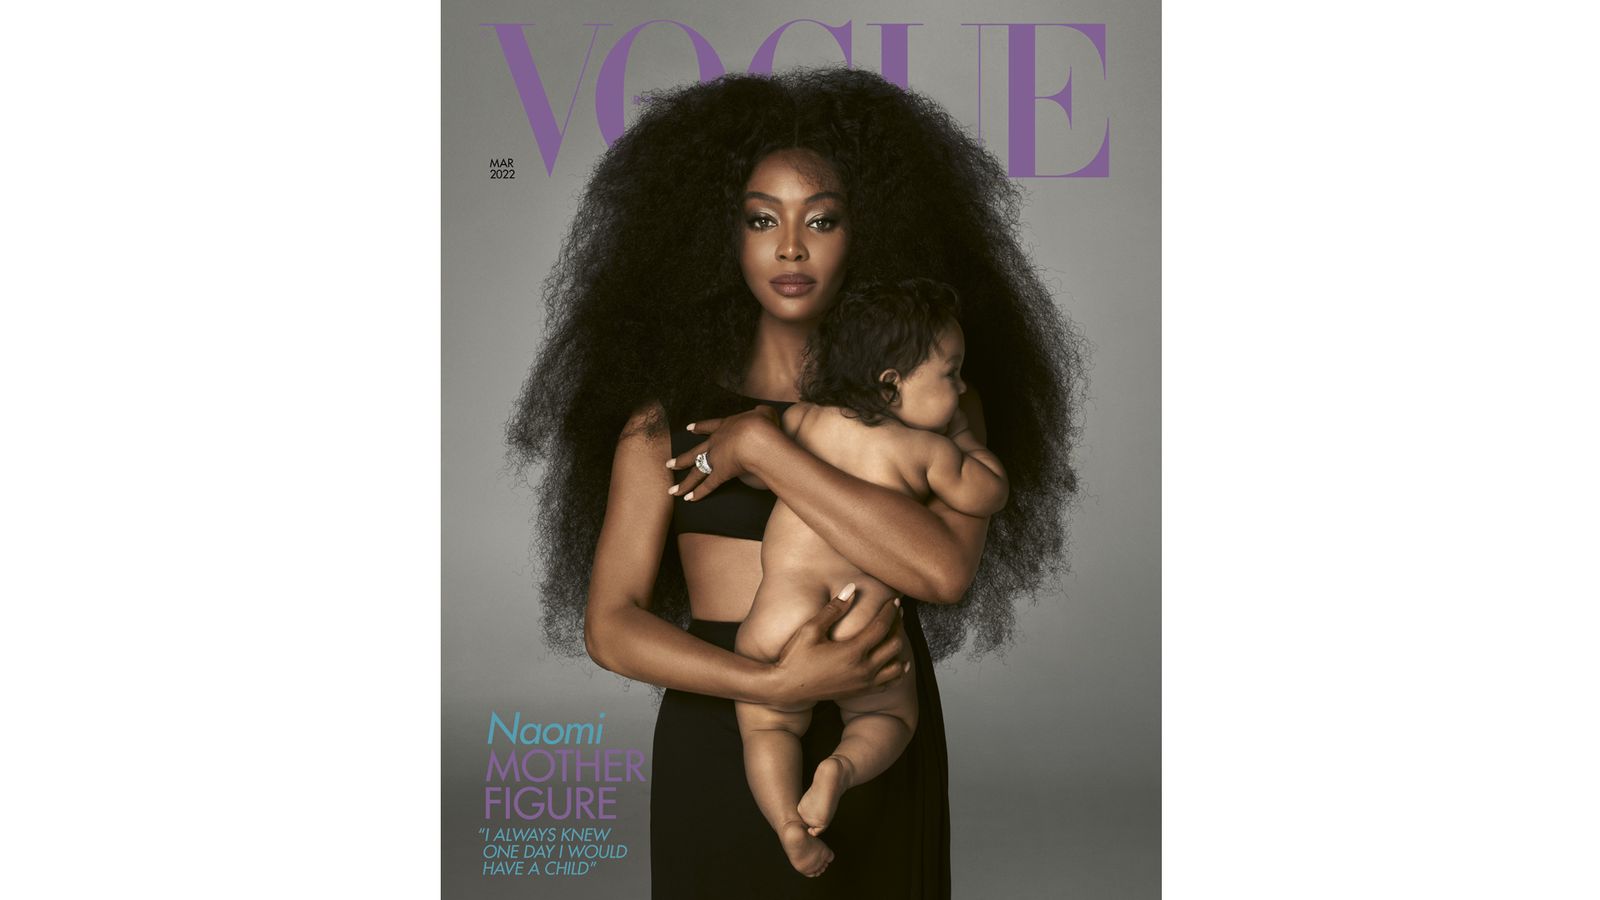 Naomi Campbell confirme que sa petite fille n’a pas été adoptée alors qu’ils jouent tous les deux dans le tournage de la couverture de Vogue |  Actualités Ents & Arts